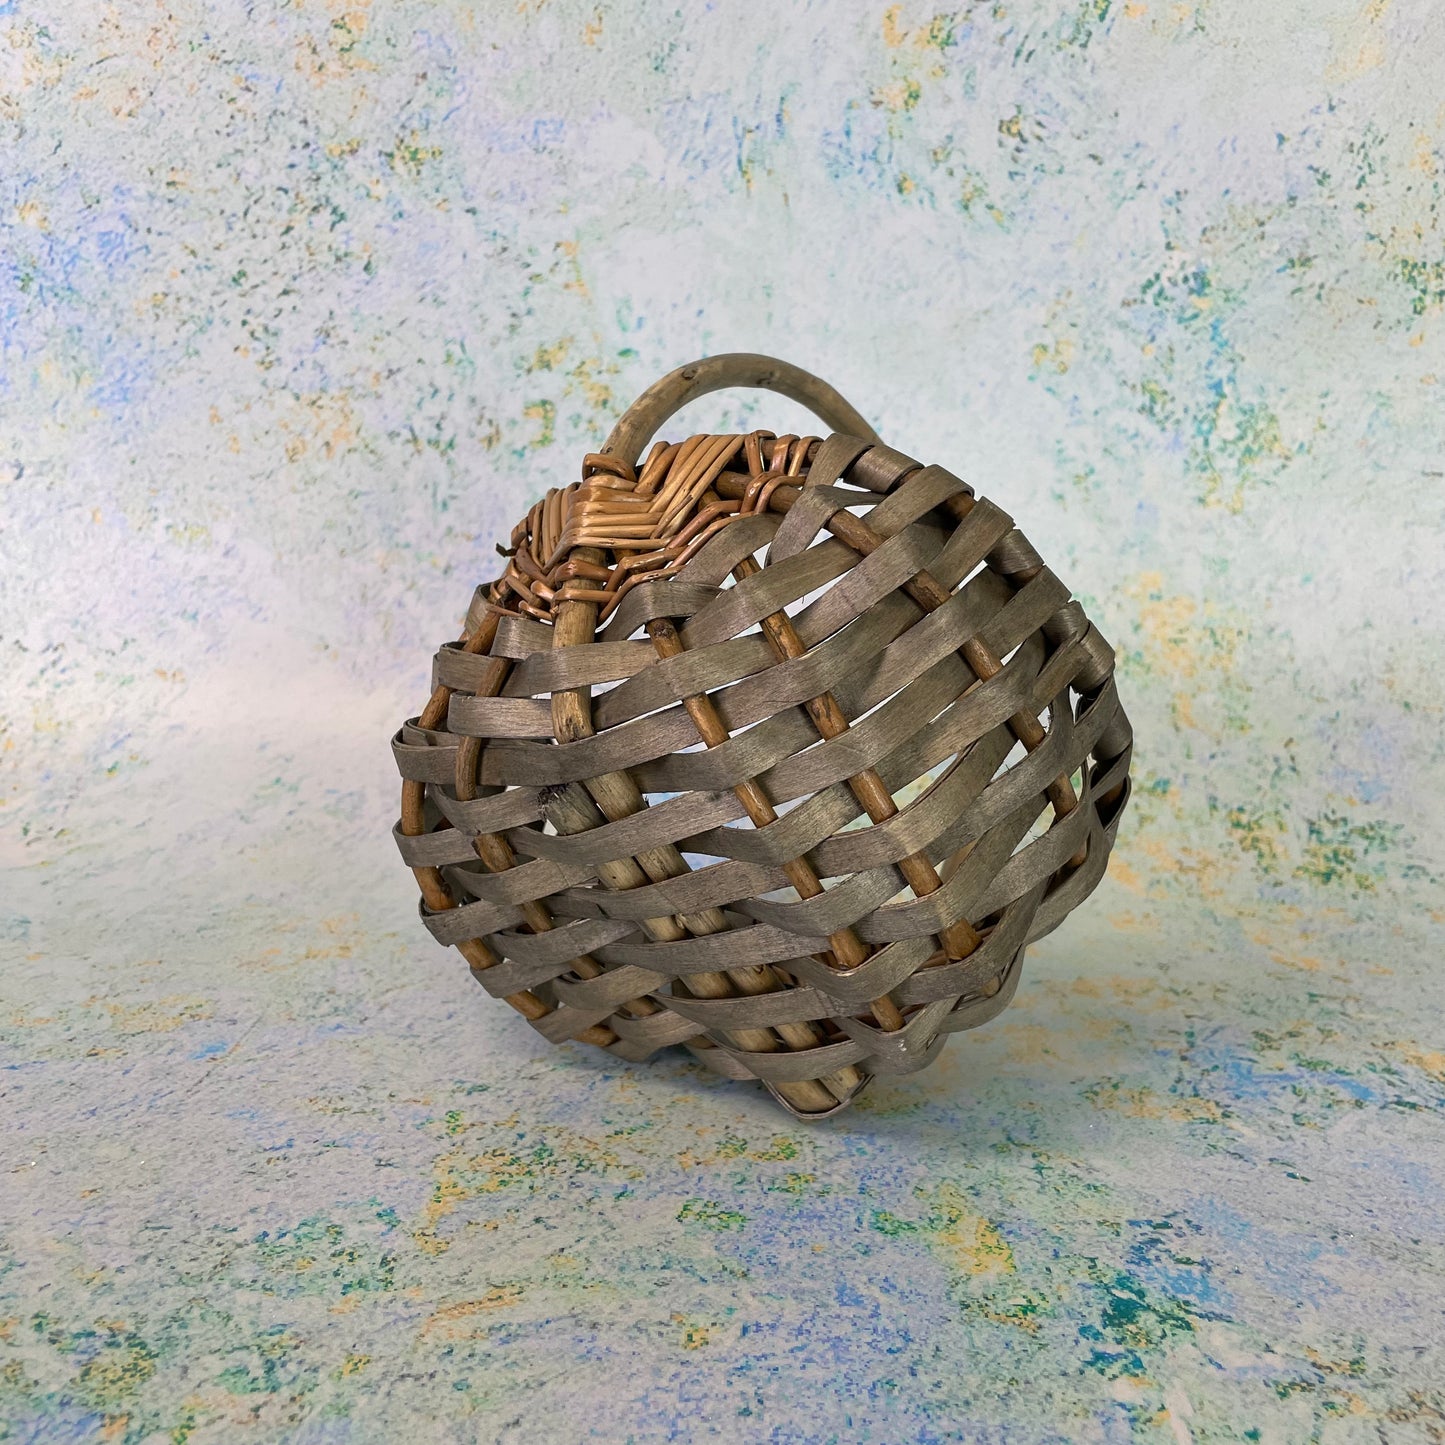 Children's Rustic Garden Basket